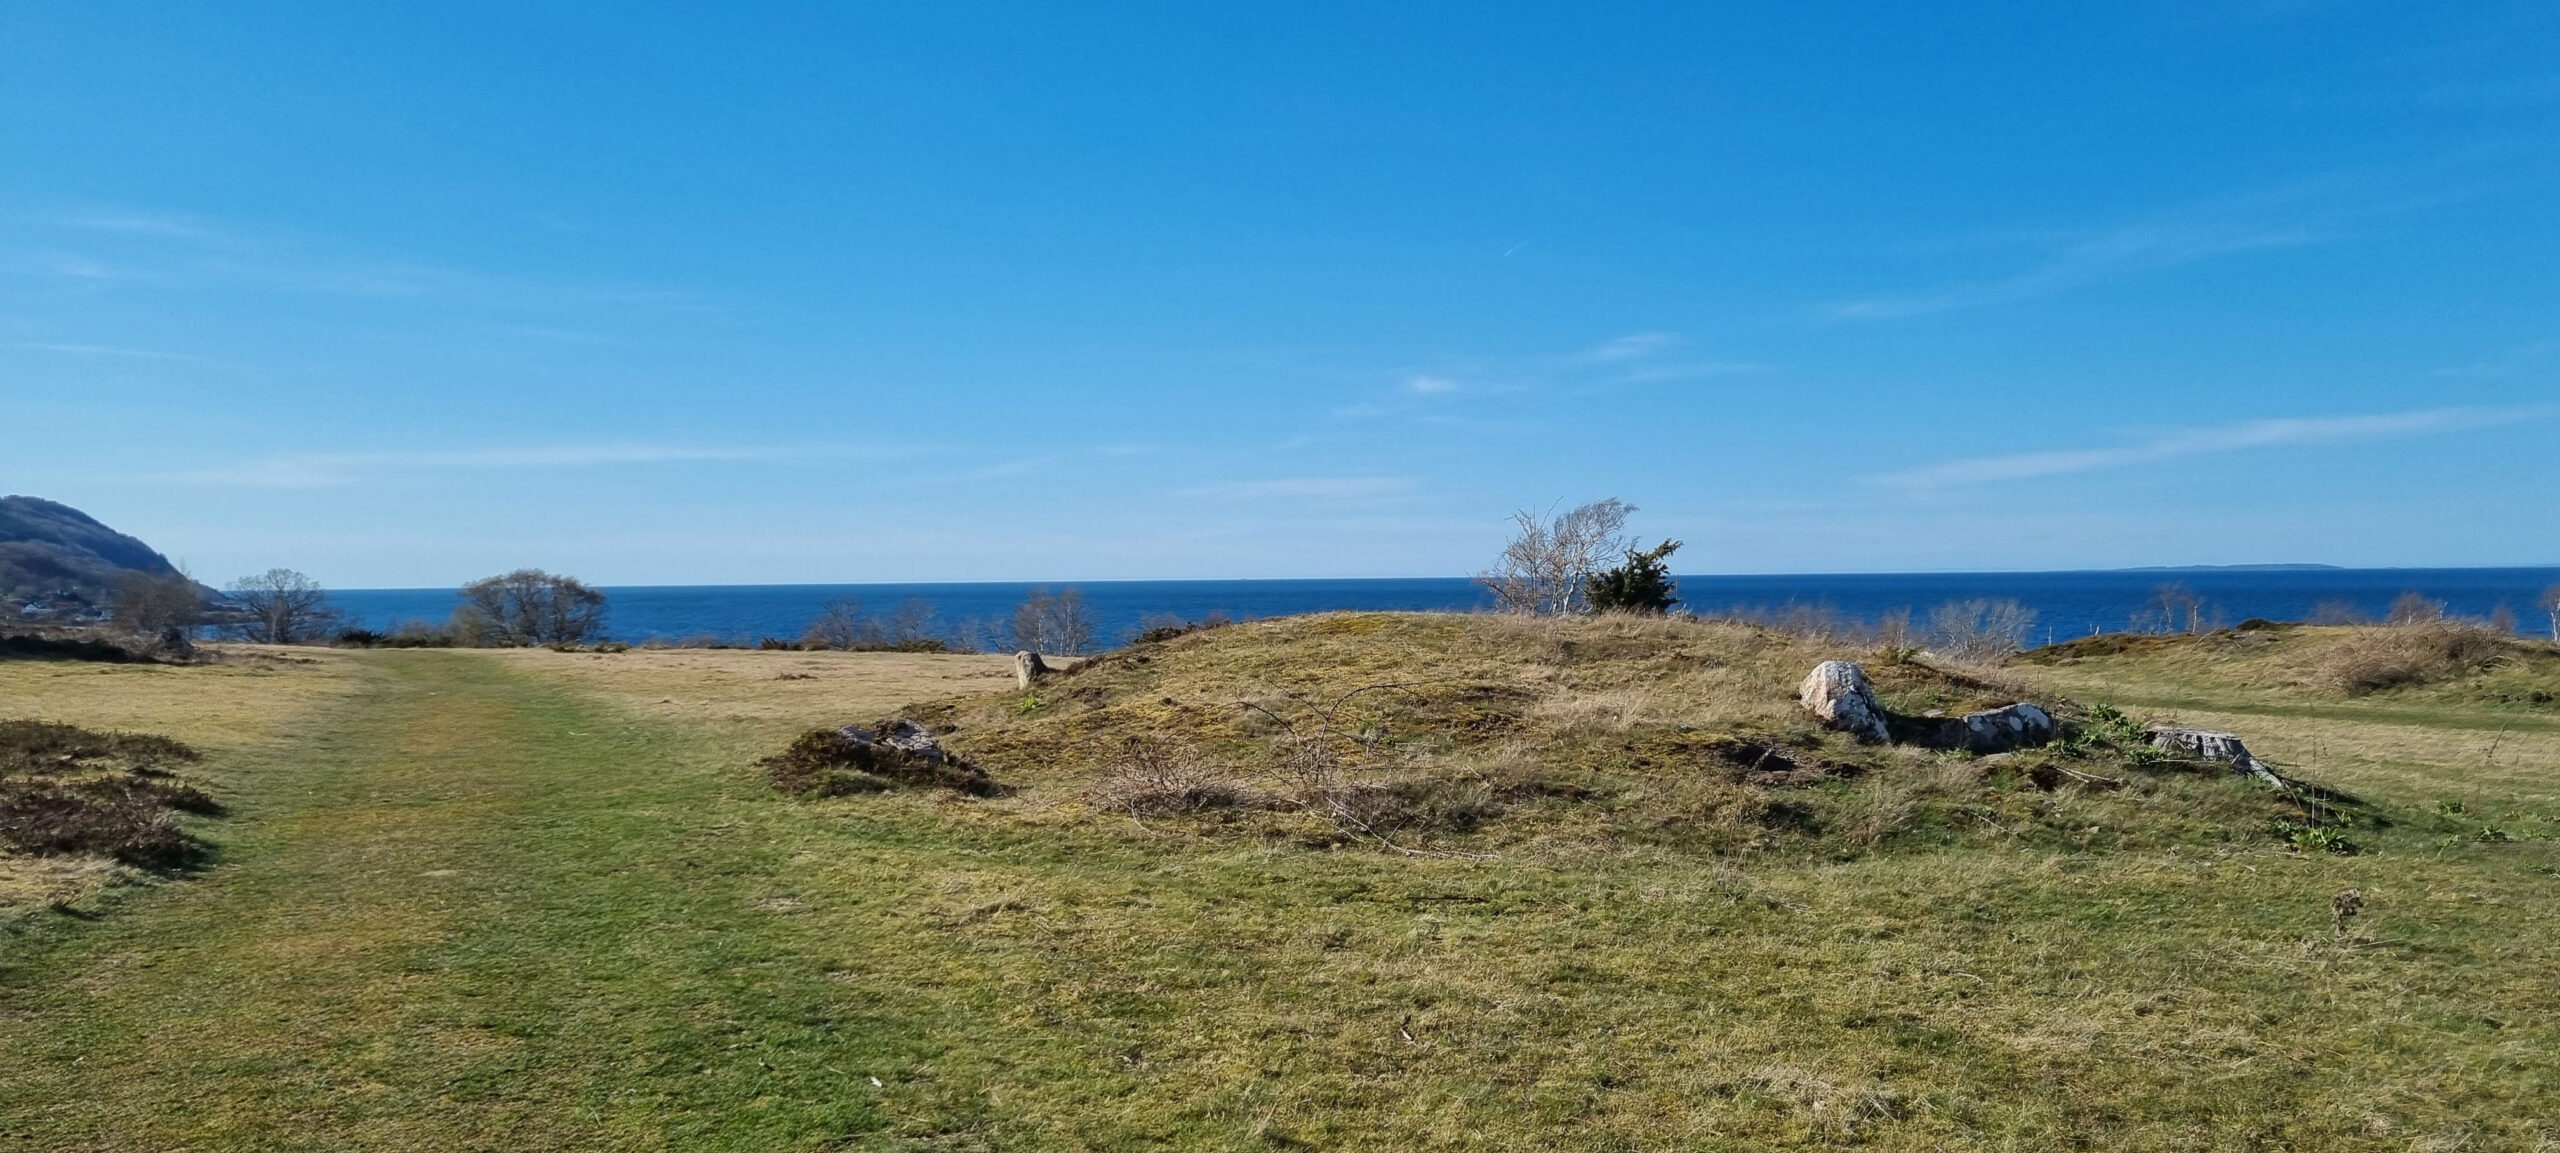 fäladsmark med hav och bronsåldersgrav